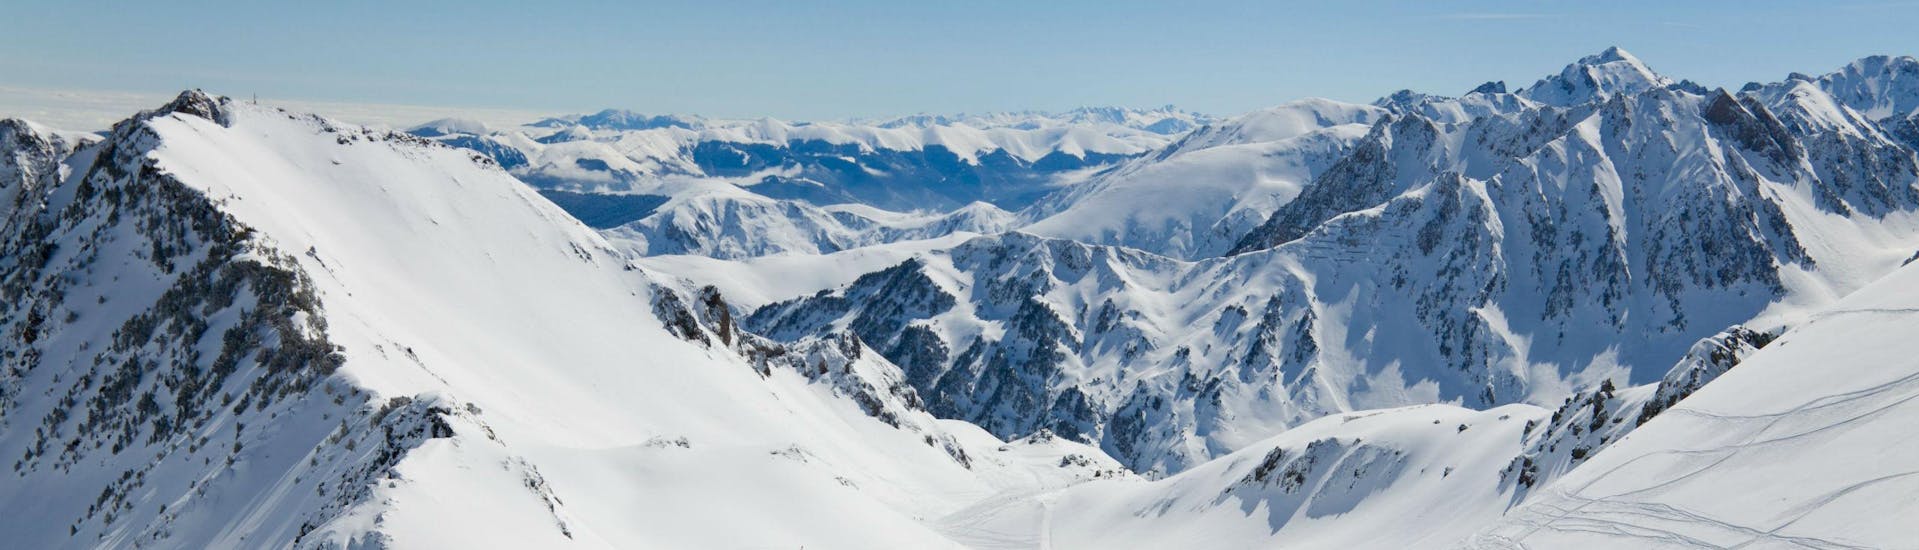 Un snowboarder está admirando la impresionante vista de los Pirineos nevados desde una de las pistas de esquí de La Mongie, donde las escuelas de esquí locales ofrecen una amplia gama de clases de esquí.